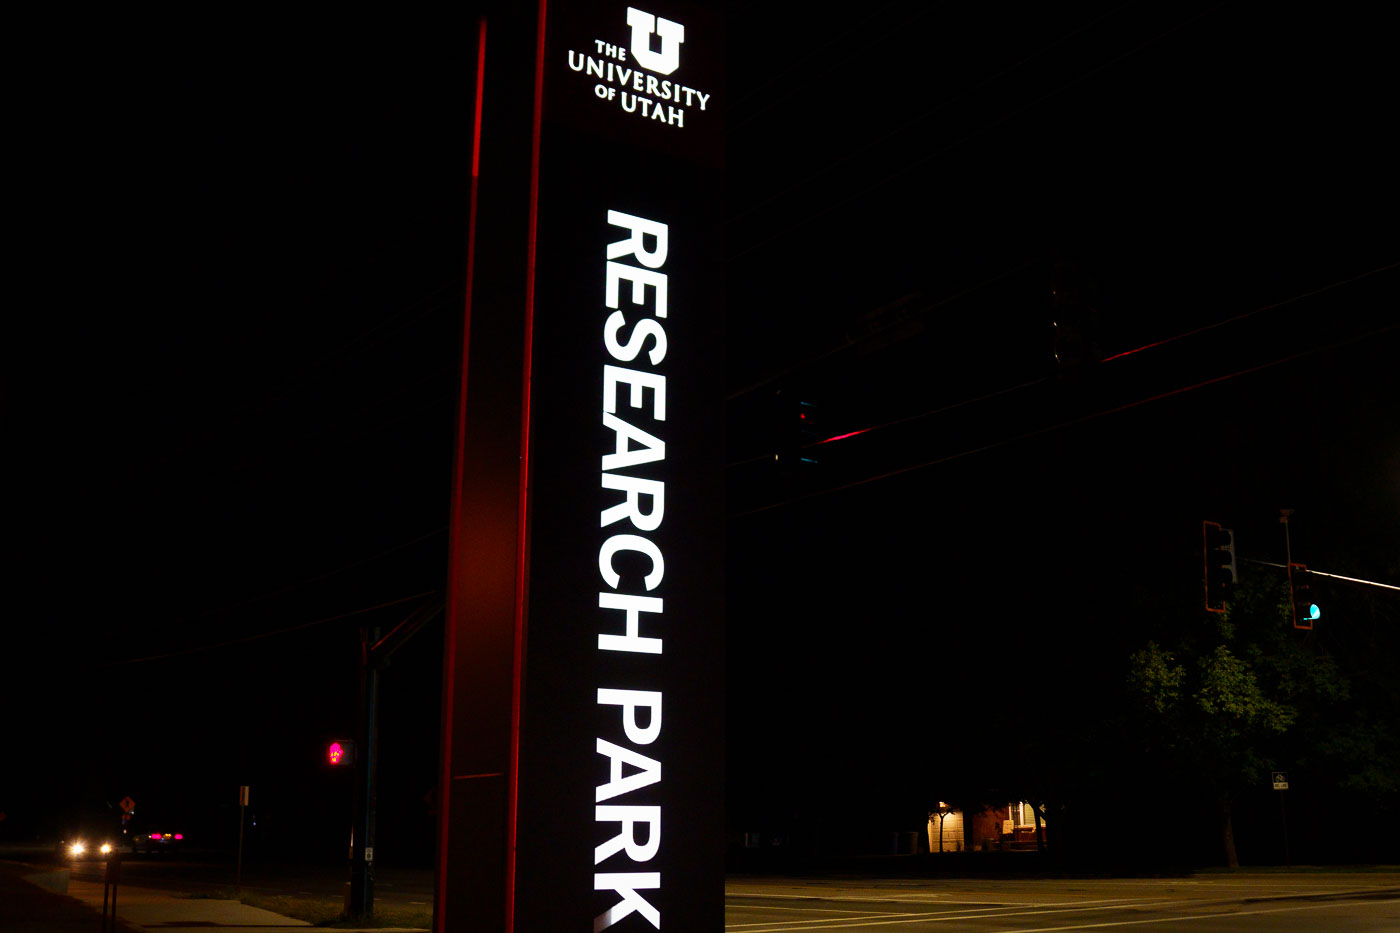 University of Utah Research Park